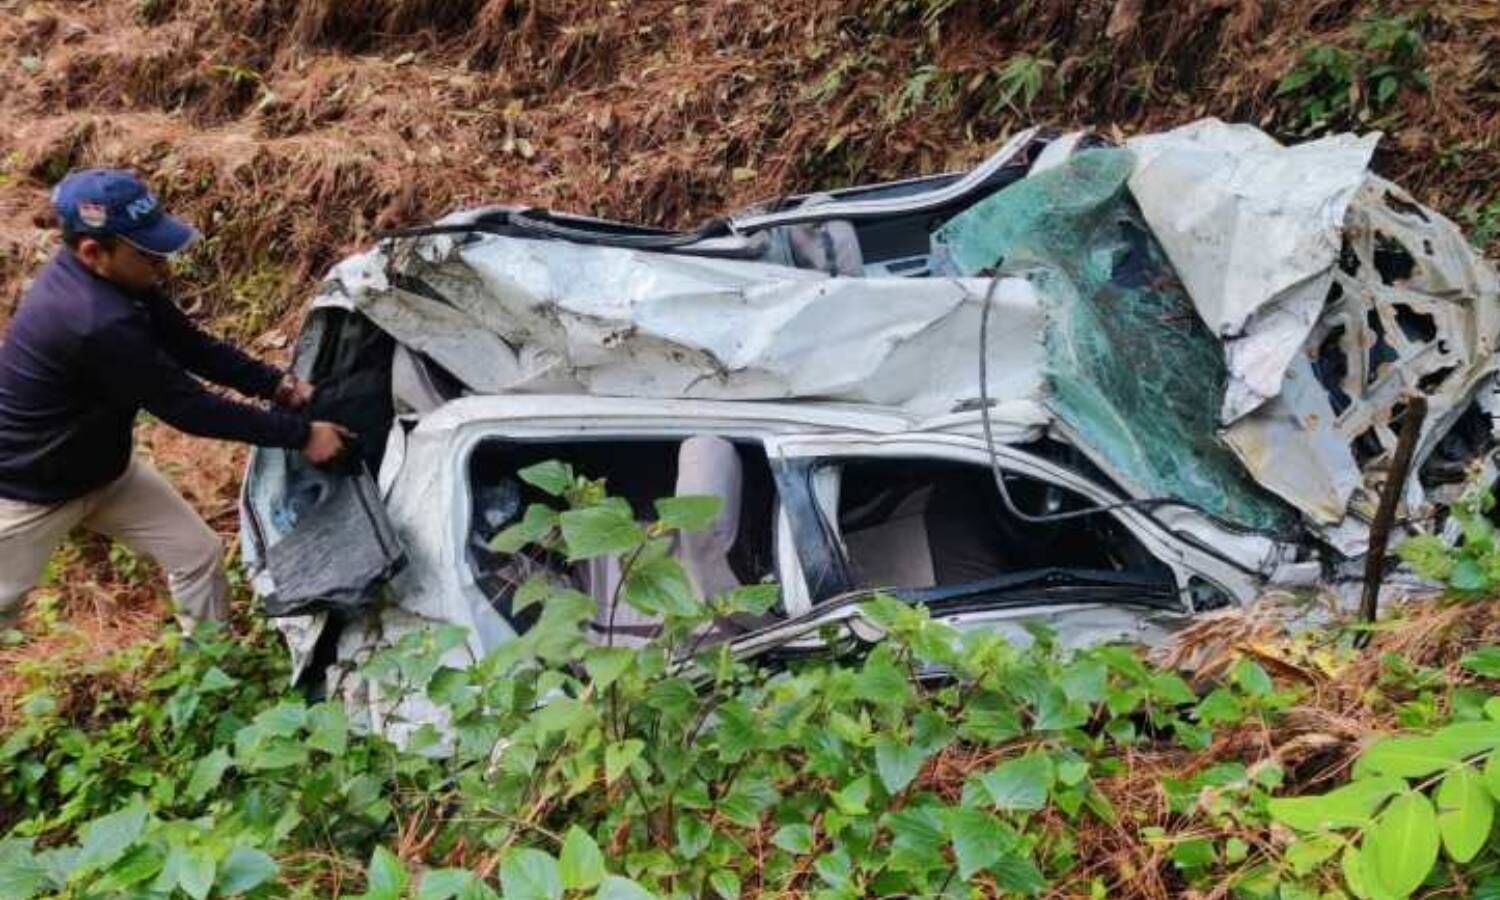 Road Accident : चम्पावत में फिर गिरी खाई में कार, हरिद्वार से पिता का श्राद्ध कर लौट रहे बेटे की मां सहित मौत, पत्नी गंभीर घायल